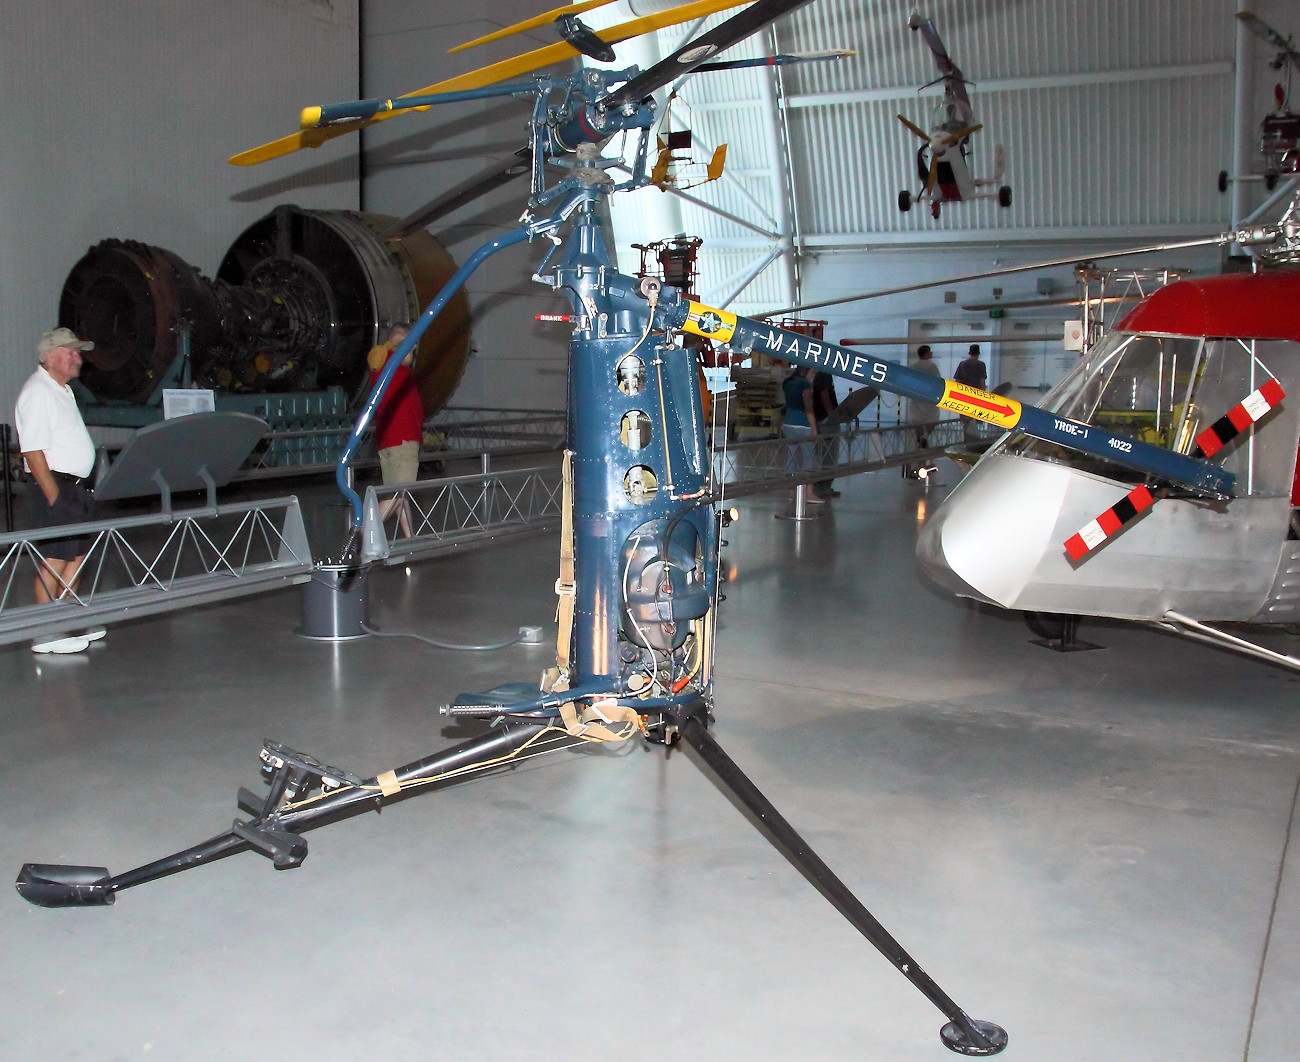 Hiller YROE-1 Rotorcycle - Nicht-Pilot konnten den Klapp-Hubschrauber in nur 8 Unterrichtsstunden fliegen